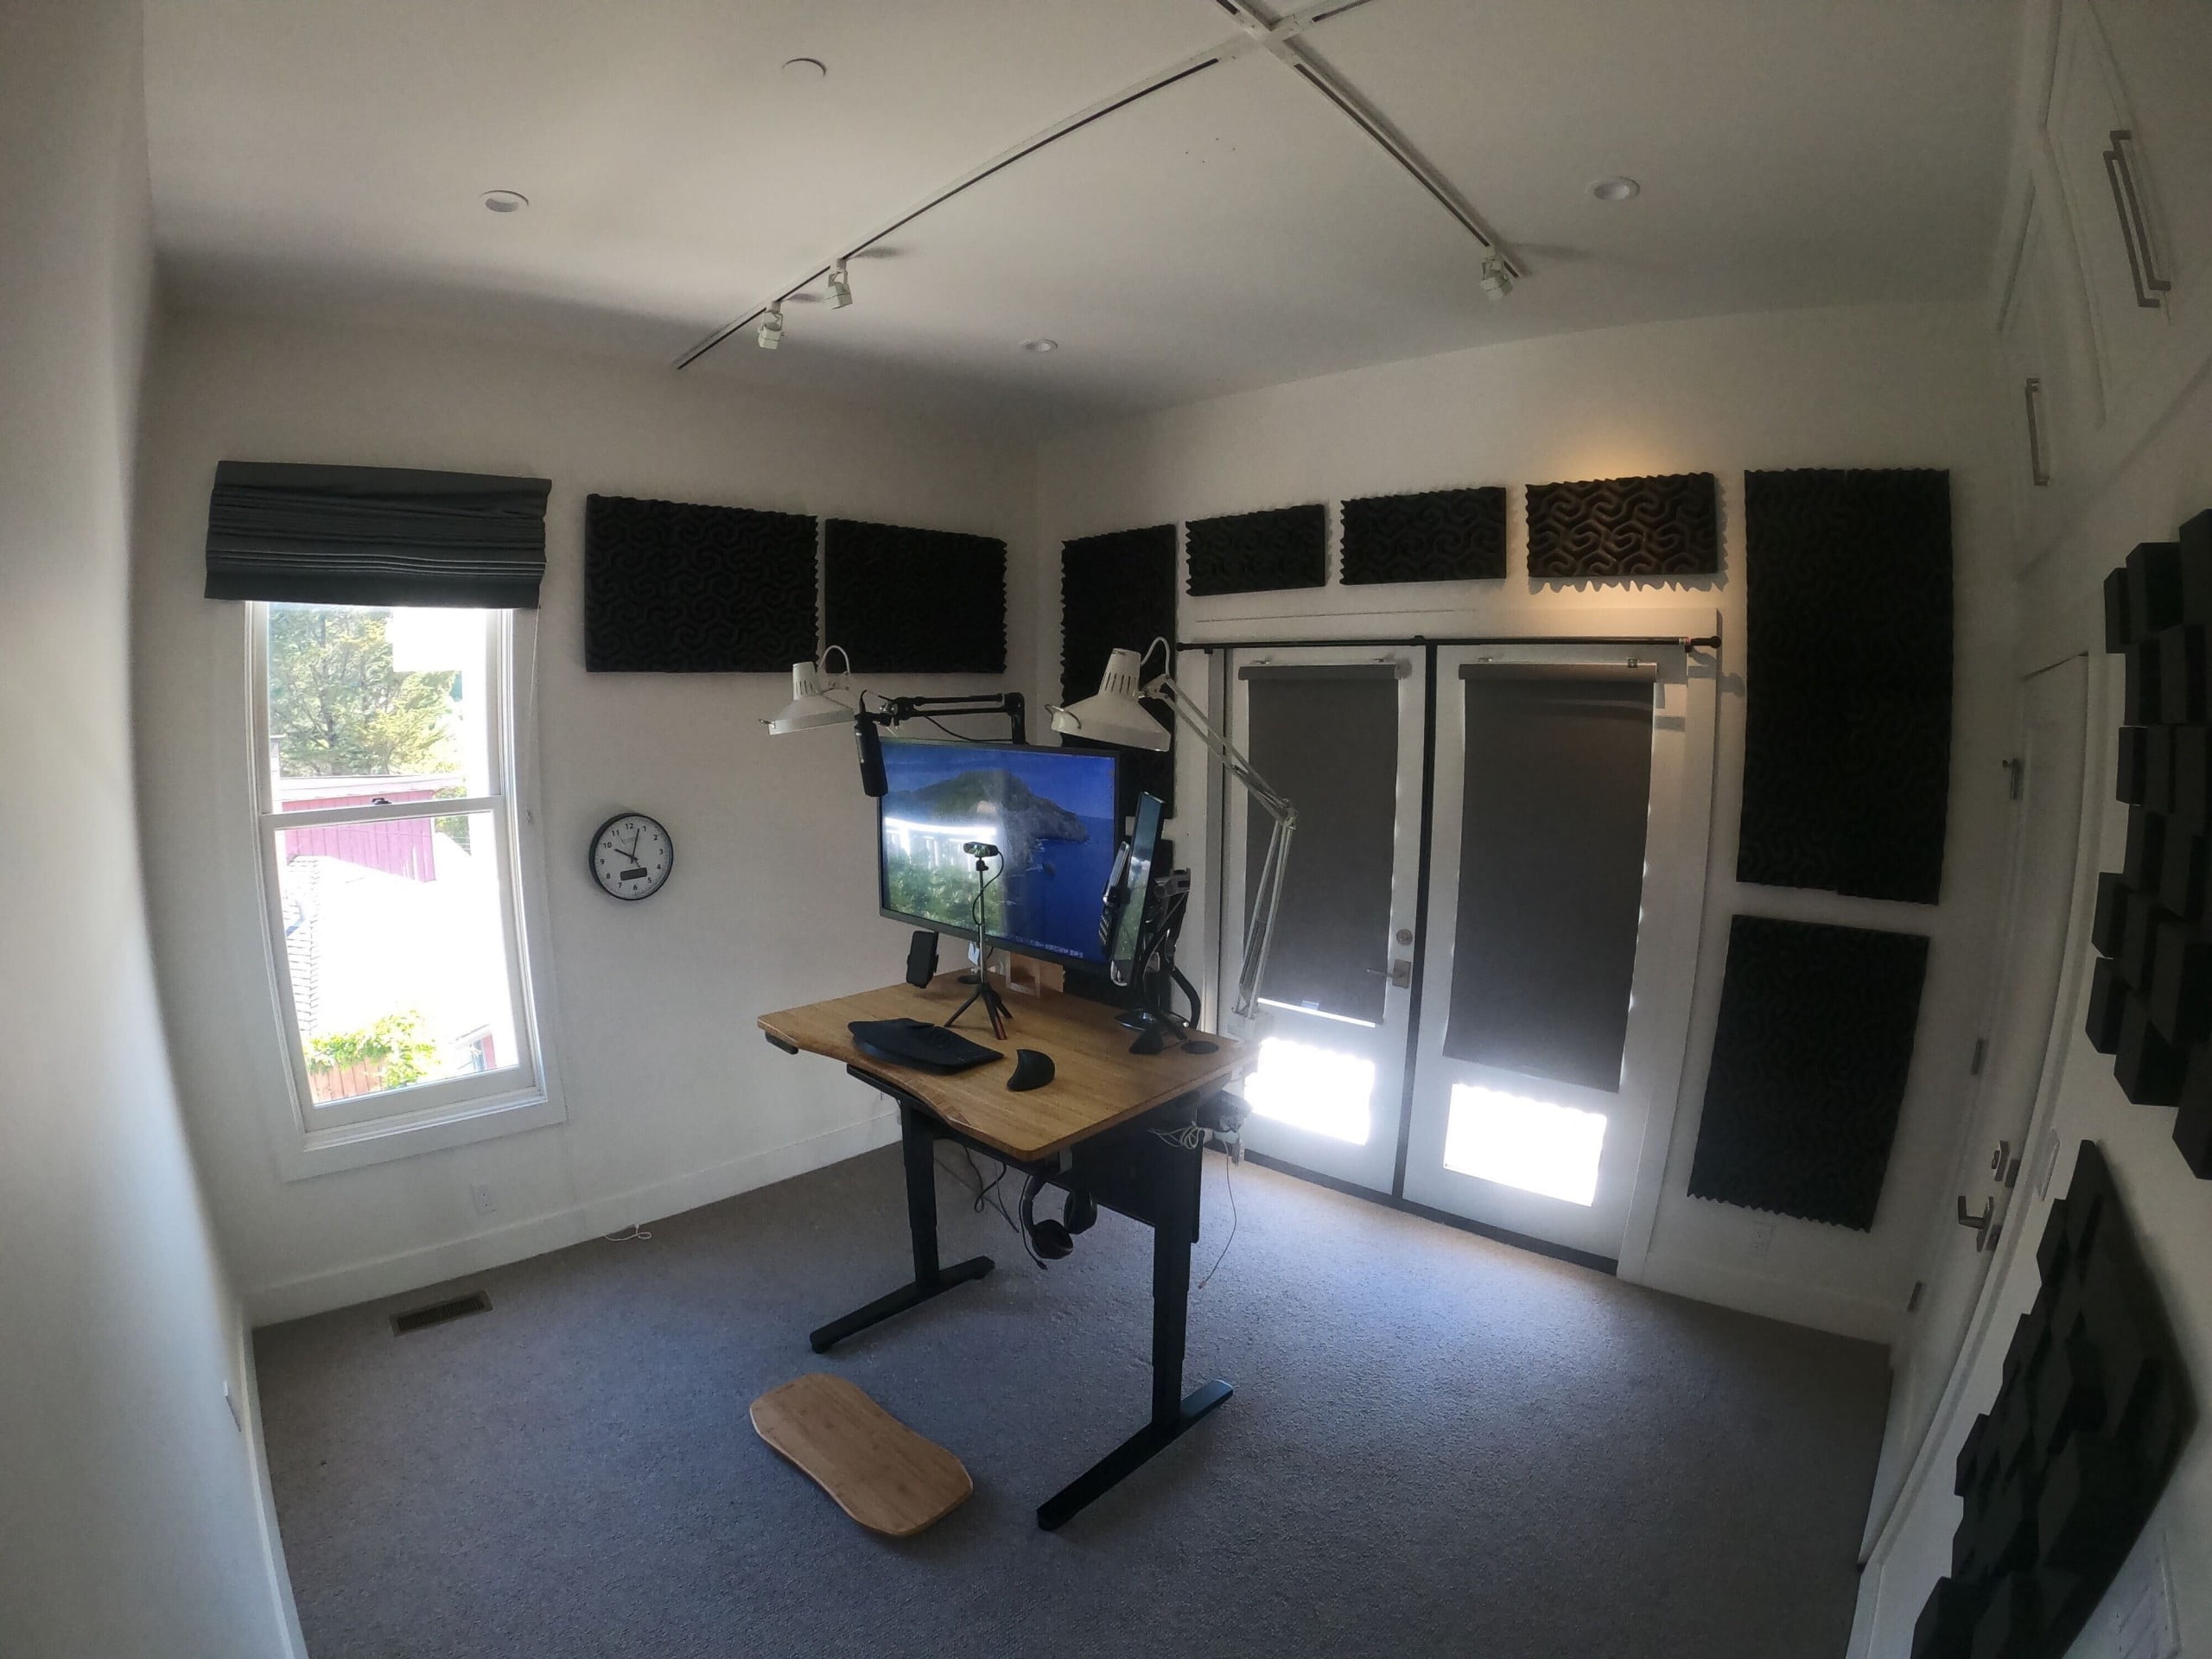 WFH / Desk Setup